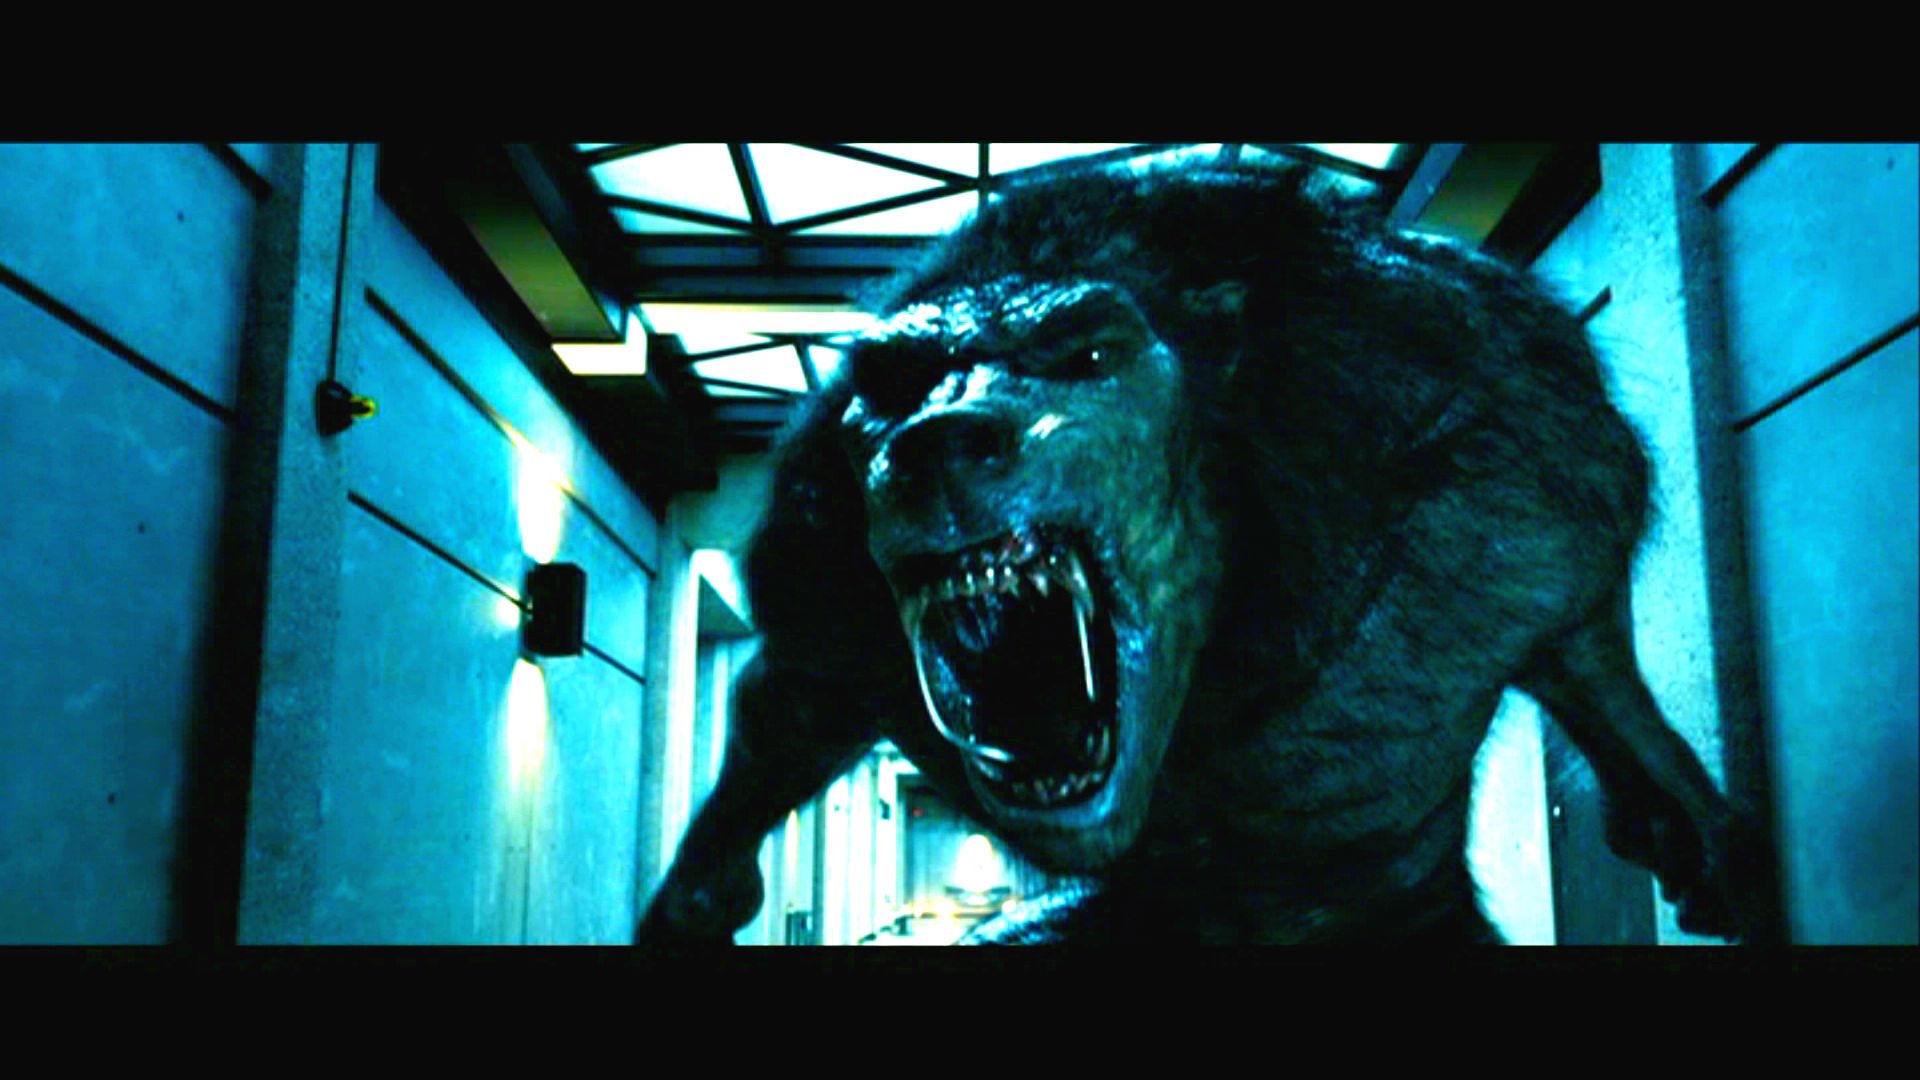 Underworld Action Fantasy Thriller Dark Lycan Werewolf Gd